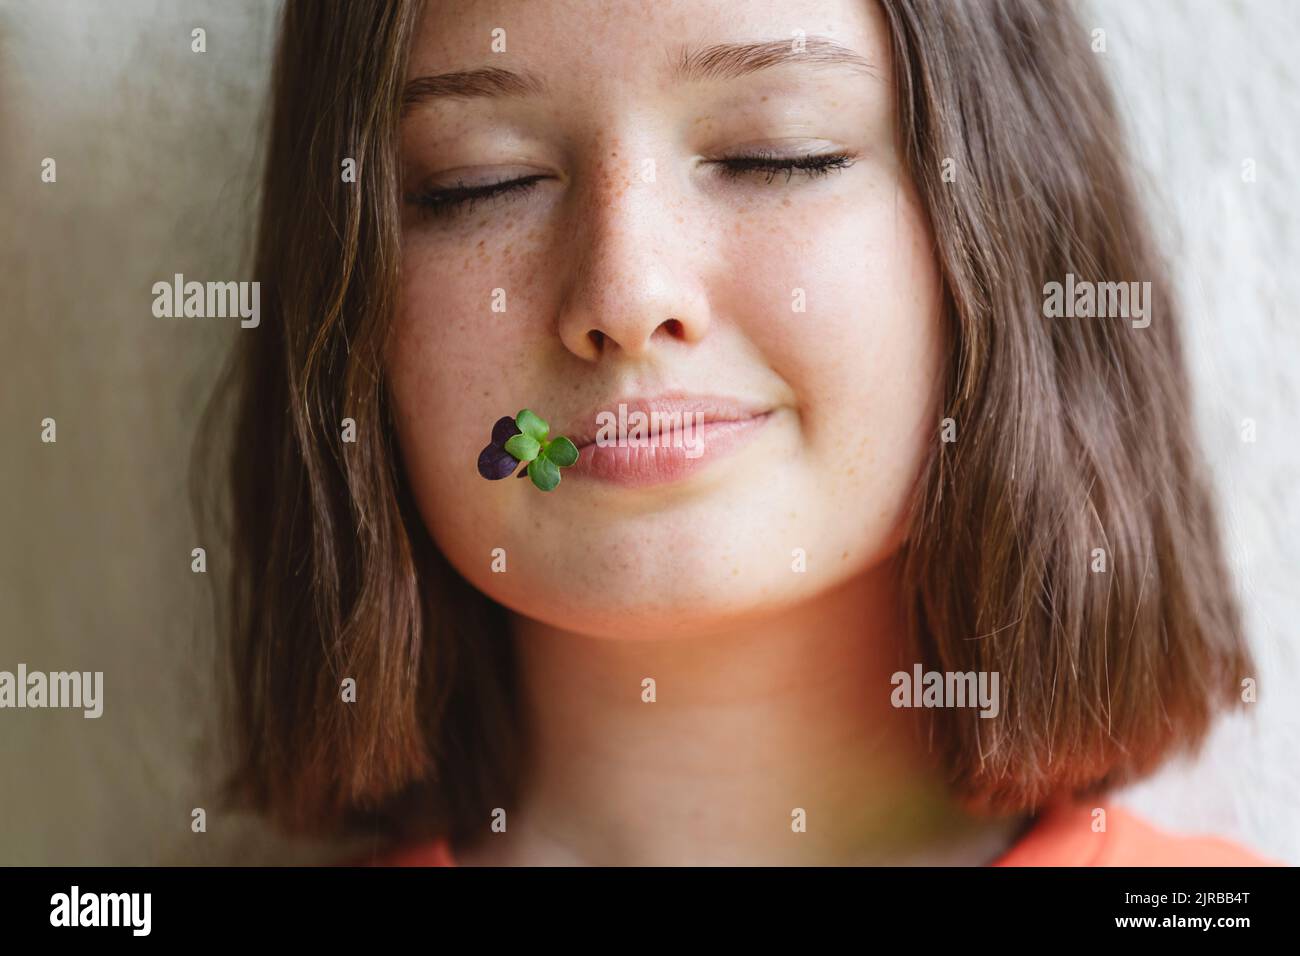 Ragazza adolescente con gli occhi chiusi e microgreens tra le labbra Foto Stock